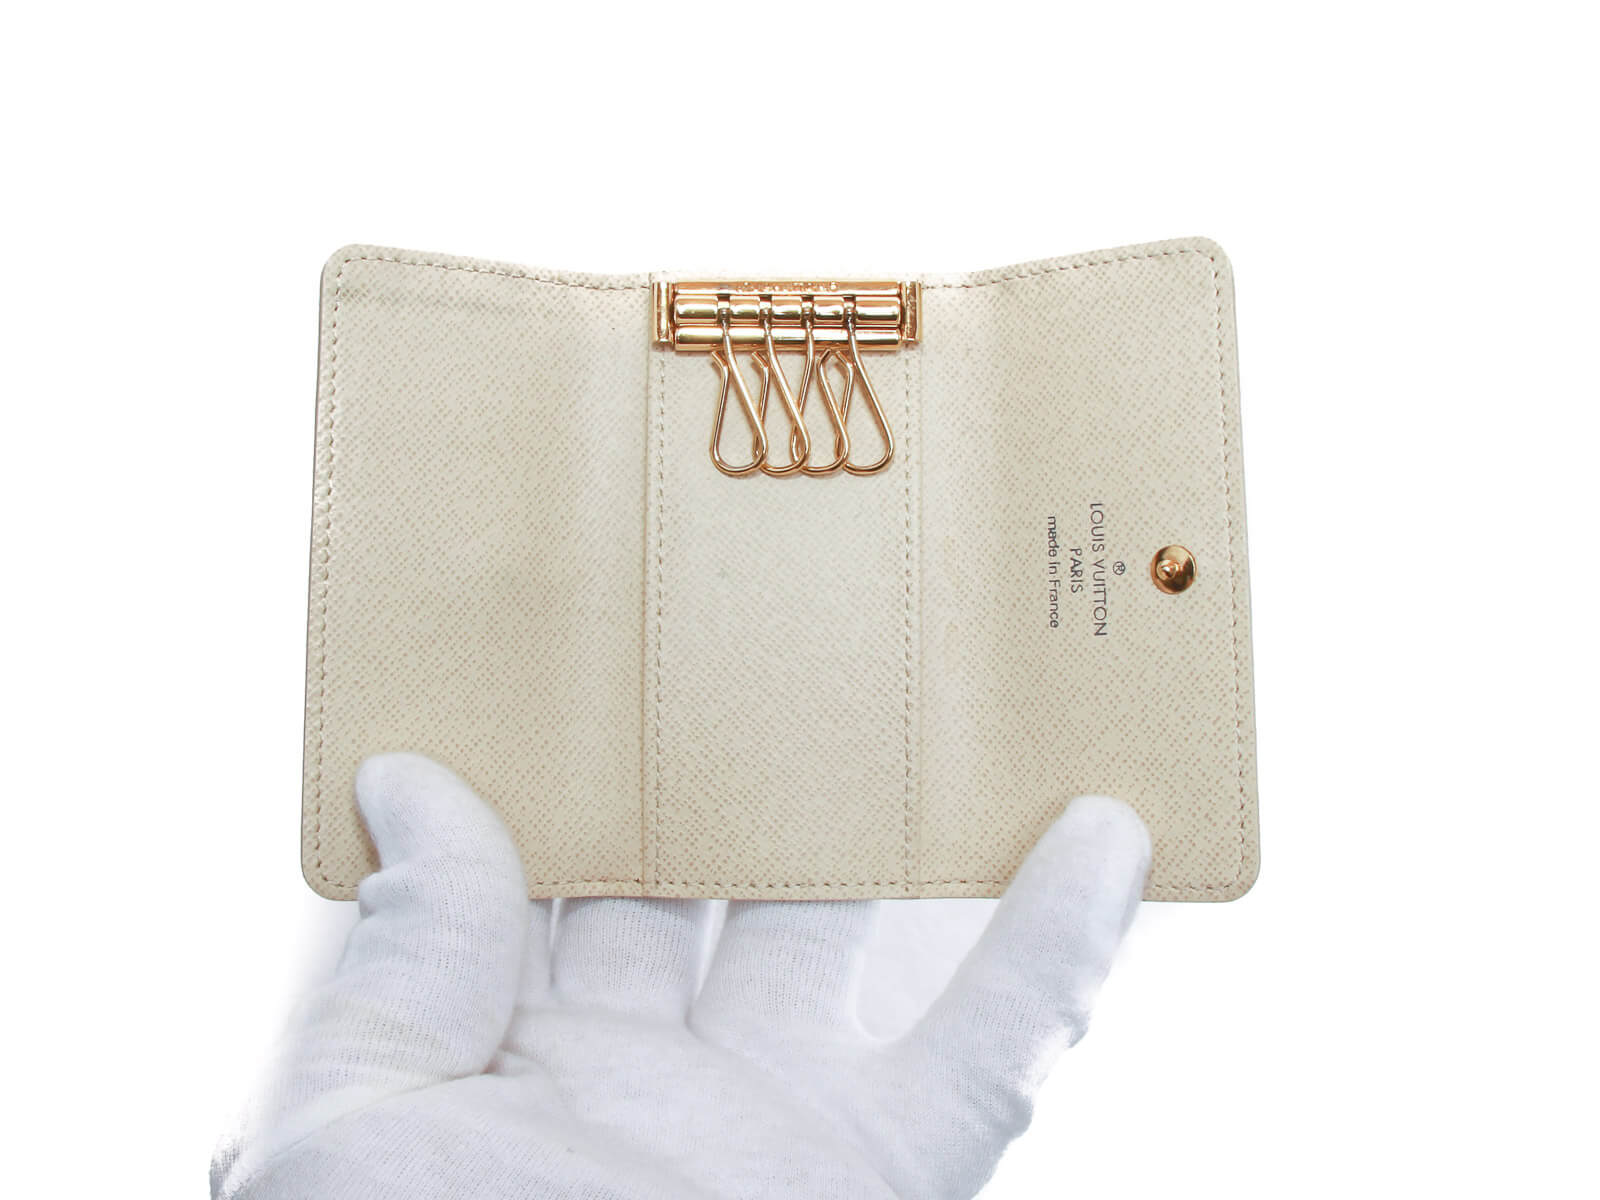 Louis Vuitton 4-key Case Damier Multicle 4 N62631 Key Chain For Women And  Men Louis Vuitton Auction